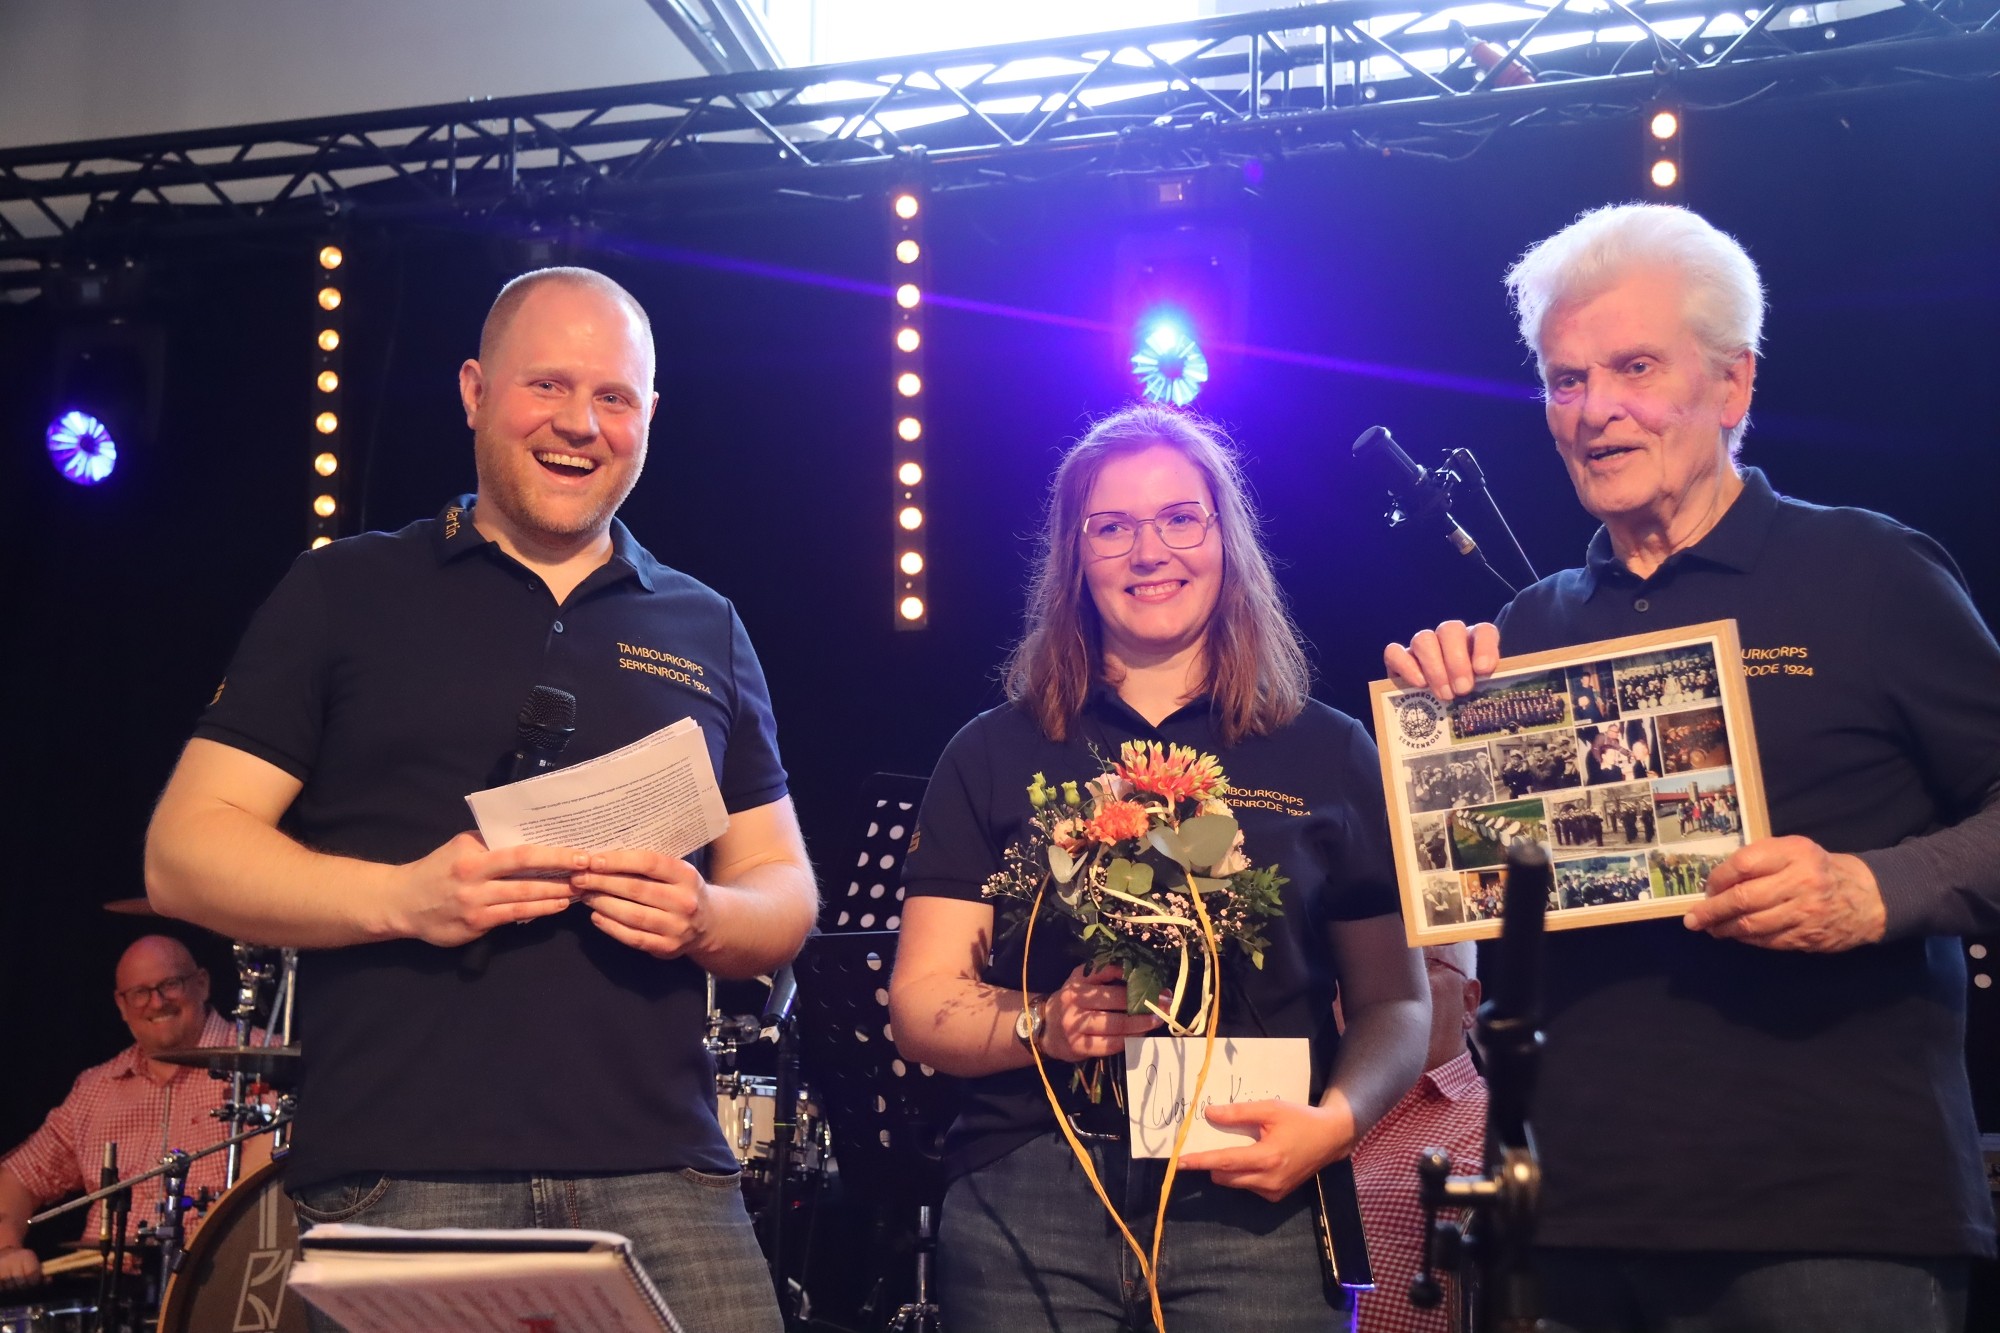 Die Vorsitzenden Martin Schneider und Stephanie Alexander überreichten dem 84-jährigen Werner König, der seit 71 Jahren aktiv im Tambourkorps mitspielt, ein Geschenk. von Marita Sapp